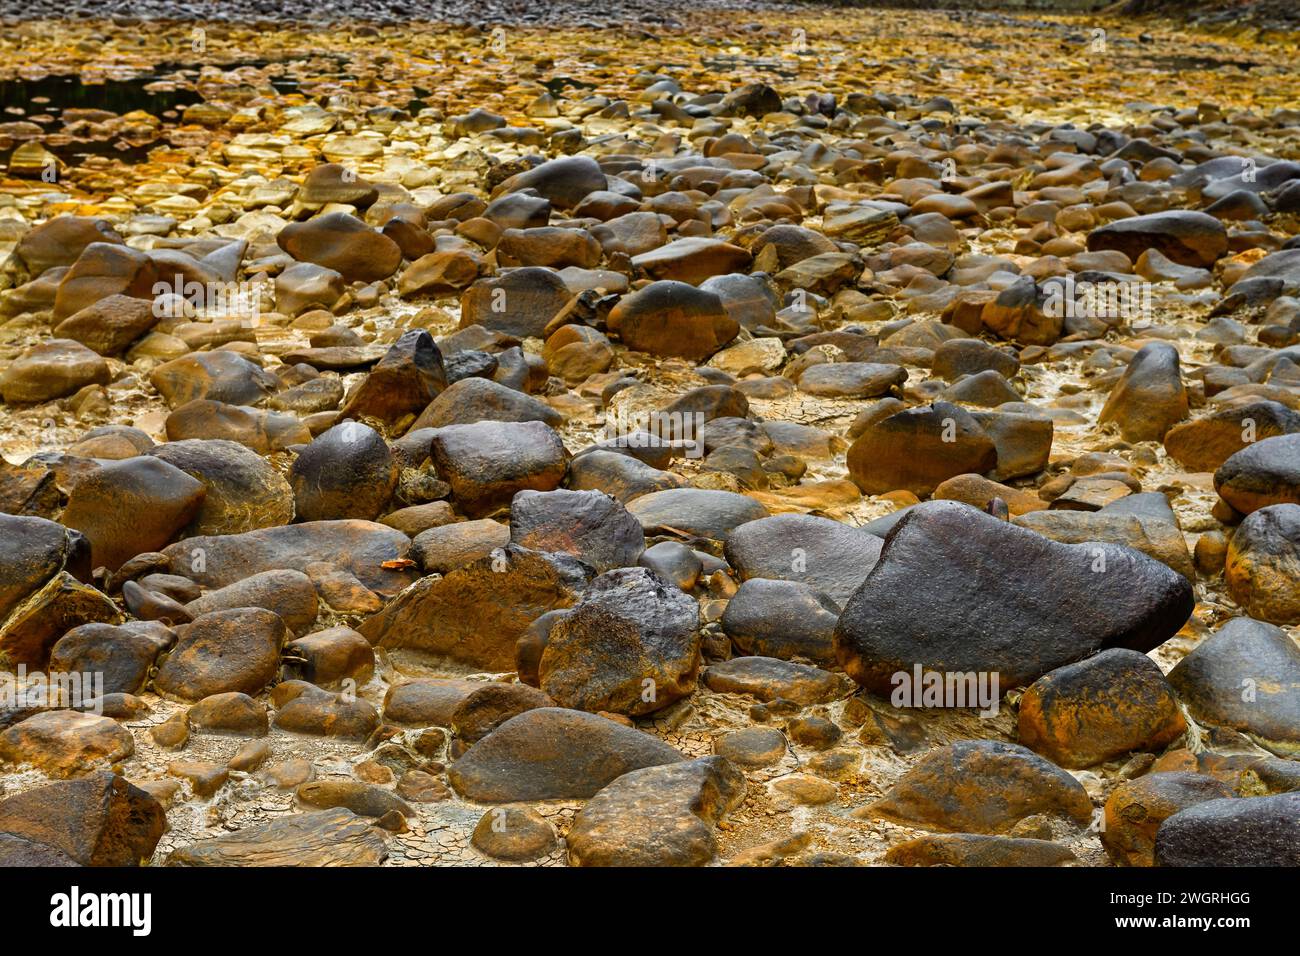 Une vue rapprochée des roches jaunâtres couvertes de soufre dans le lit de la rivière Rio Tinto sous un ciel brumeux Banque D'Images